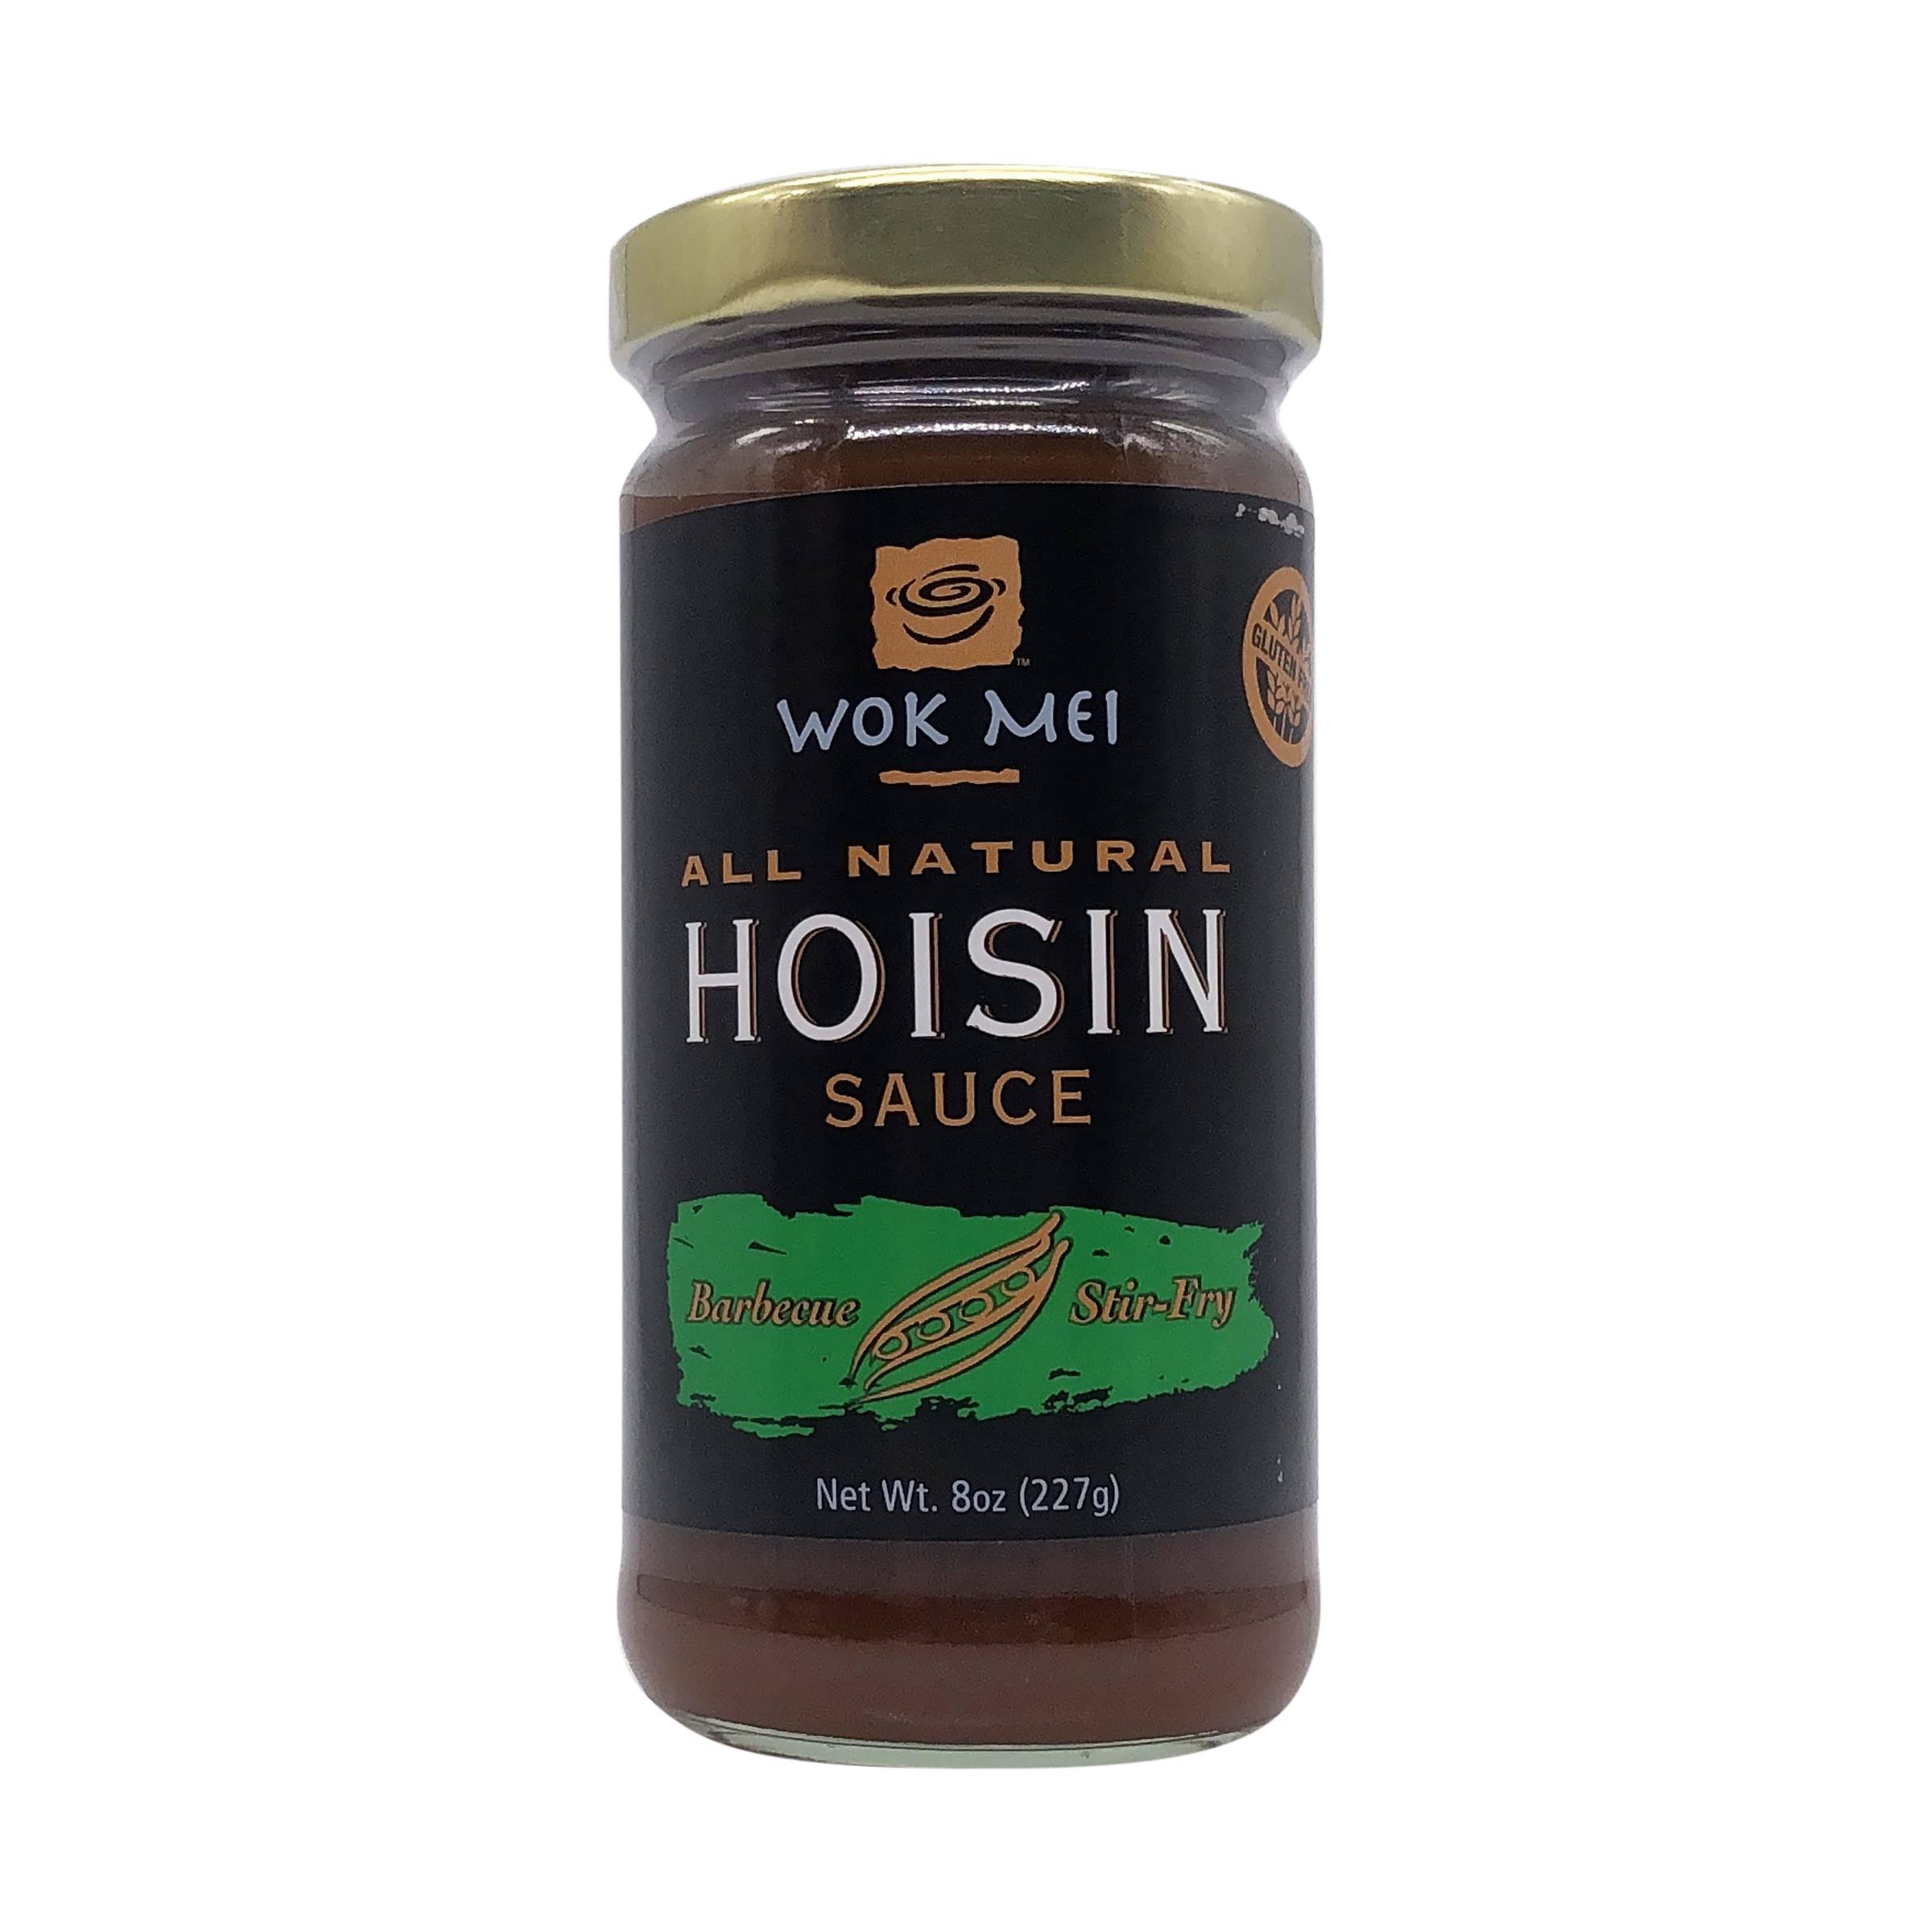 Wok Mei Hoisin Sauce - 8 oz jar